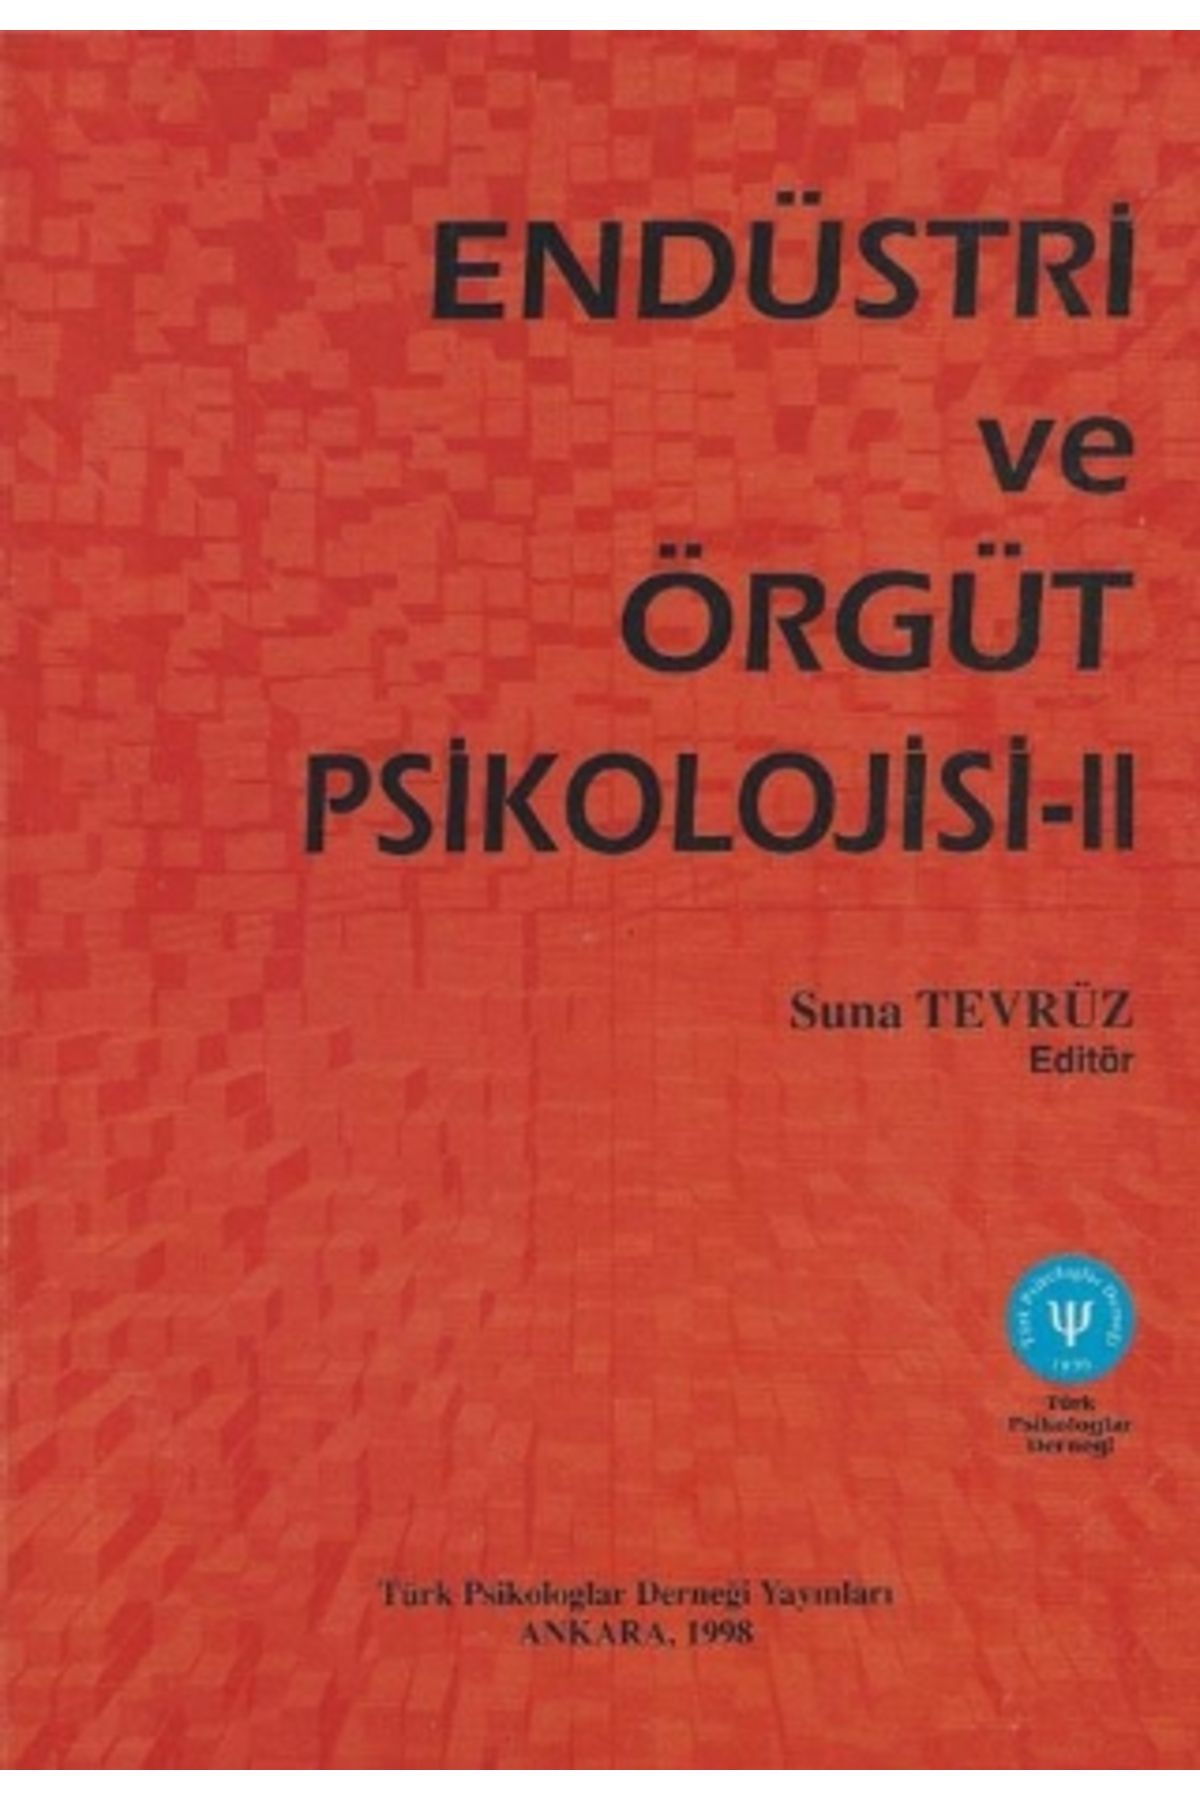 Türk Psikologlar Derneği Yayınları Endüstri ve Örgüt Psikolojisi II